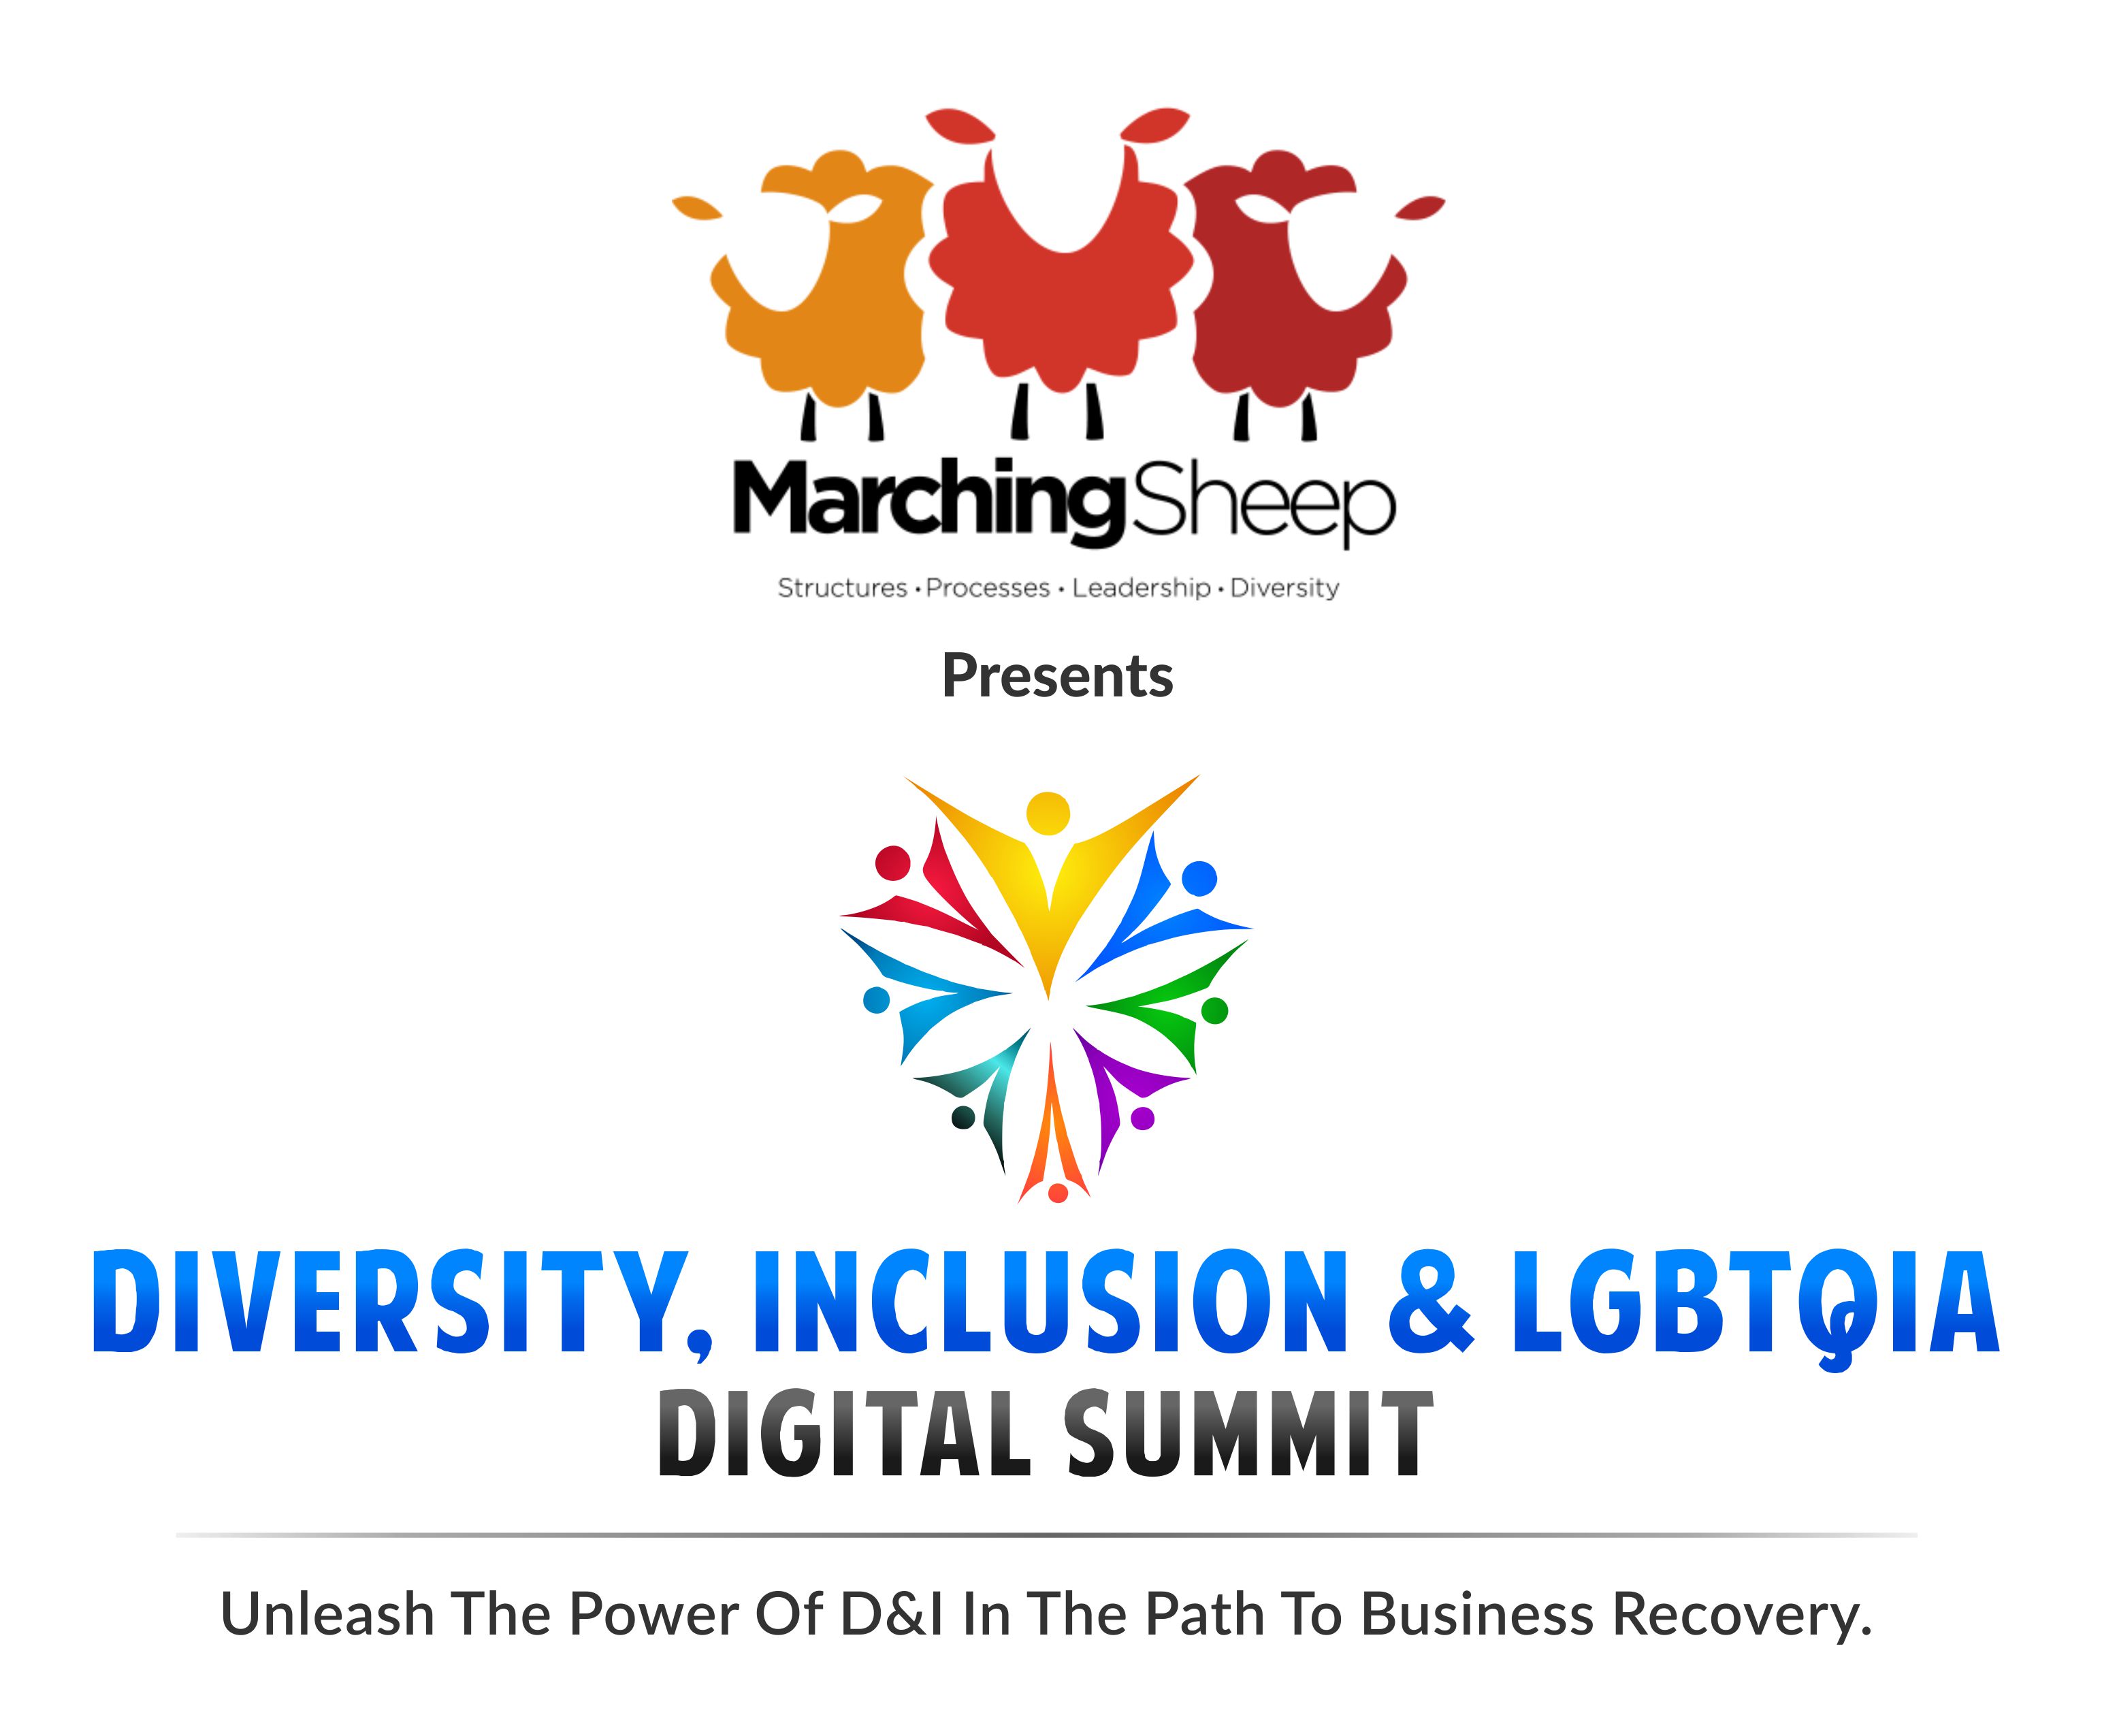 Diversity, Inclusion & LGBTQI Digital Summit